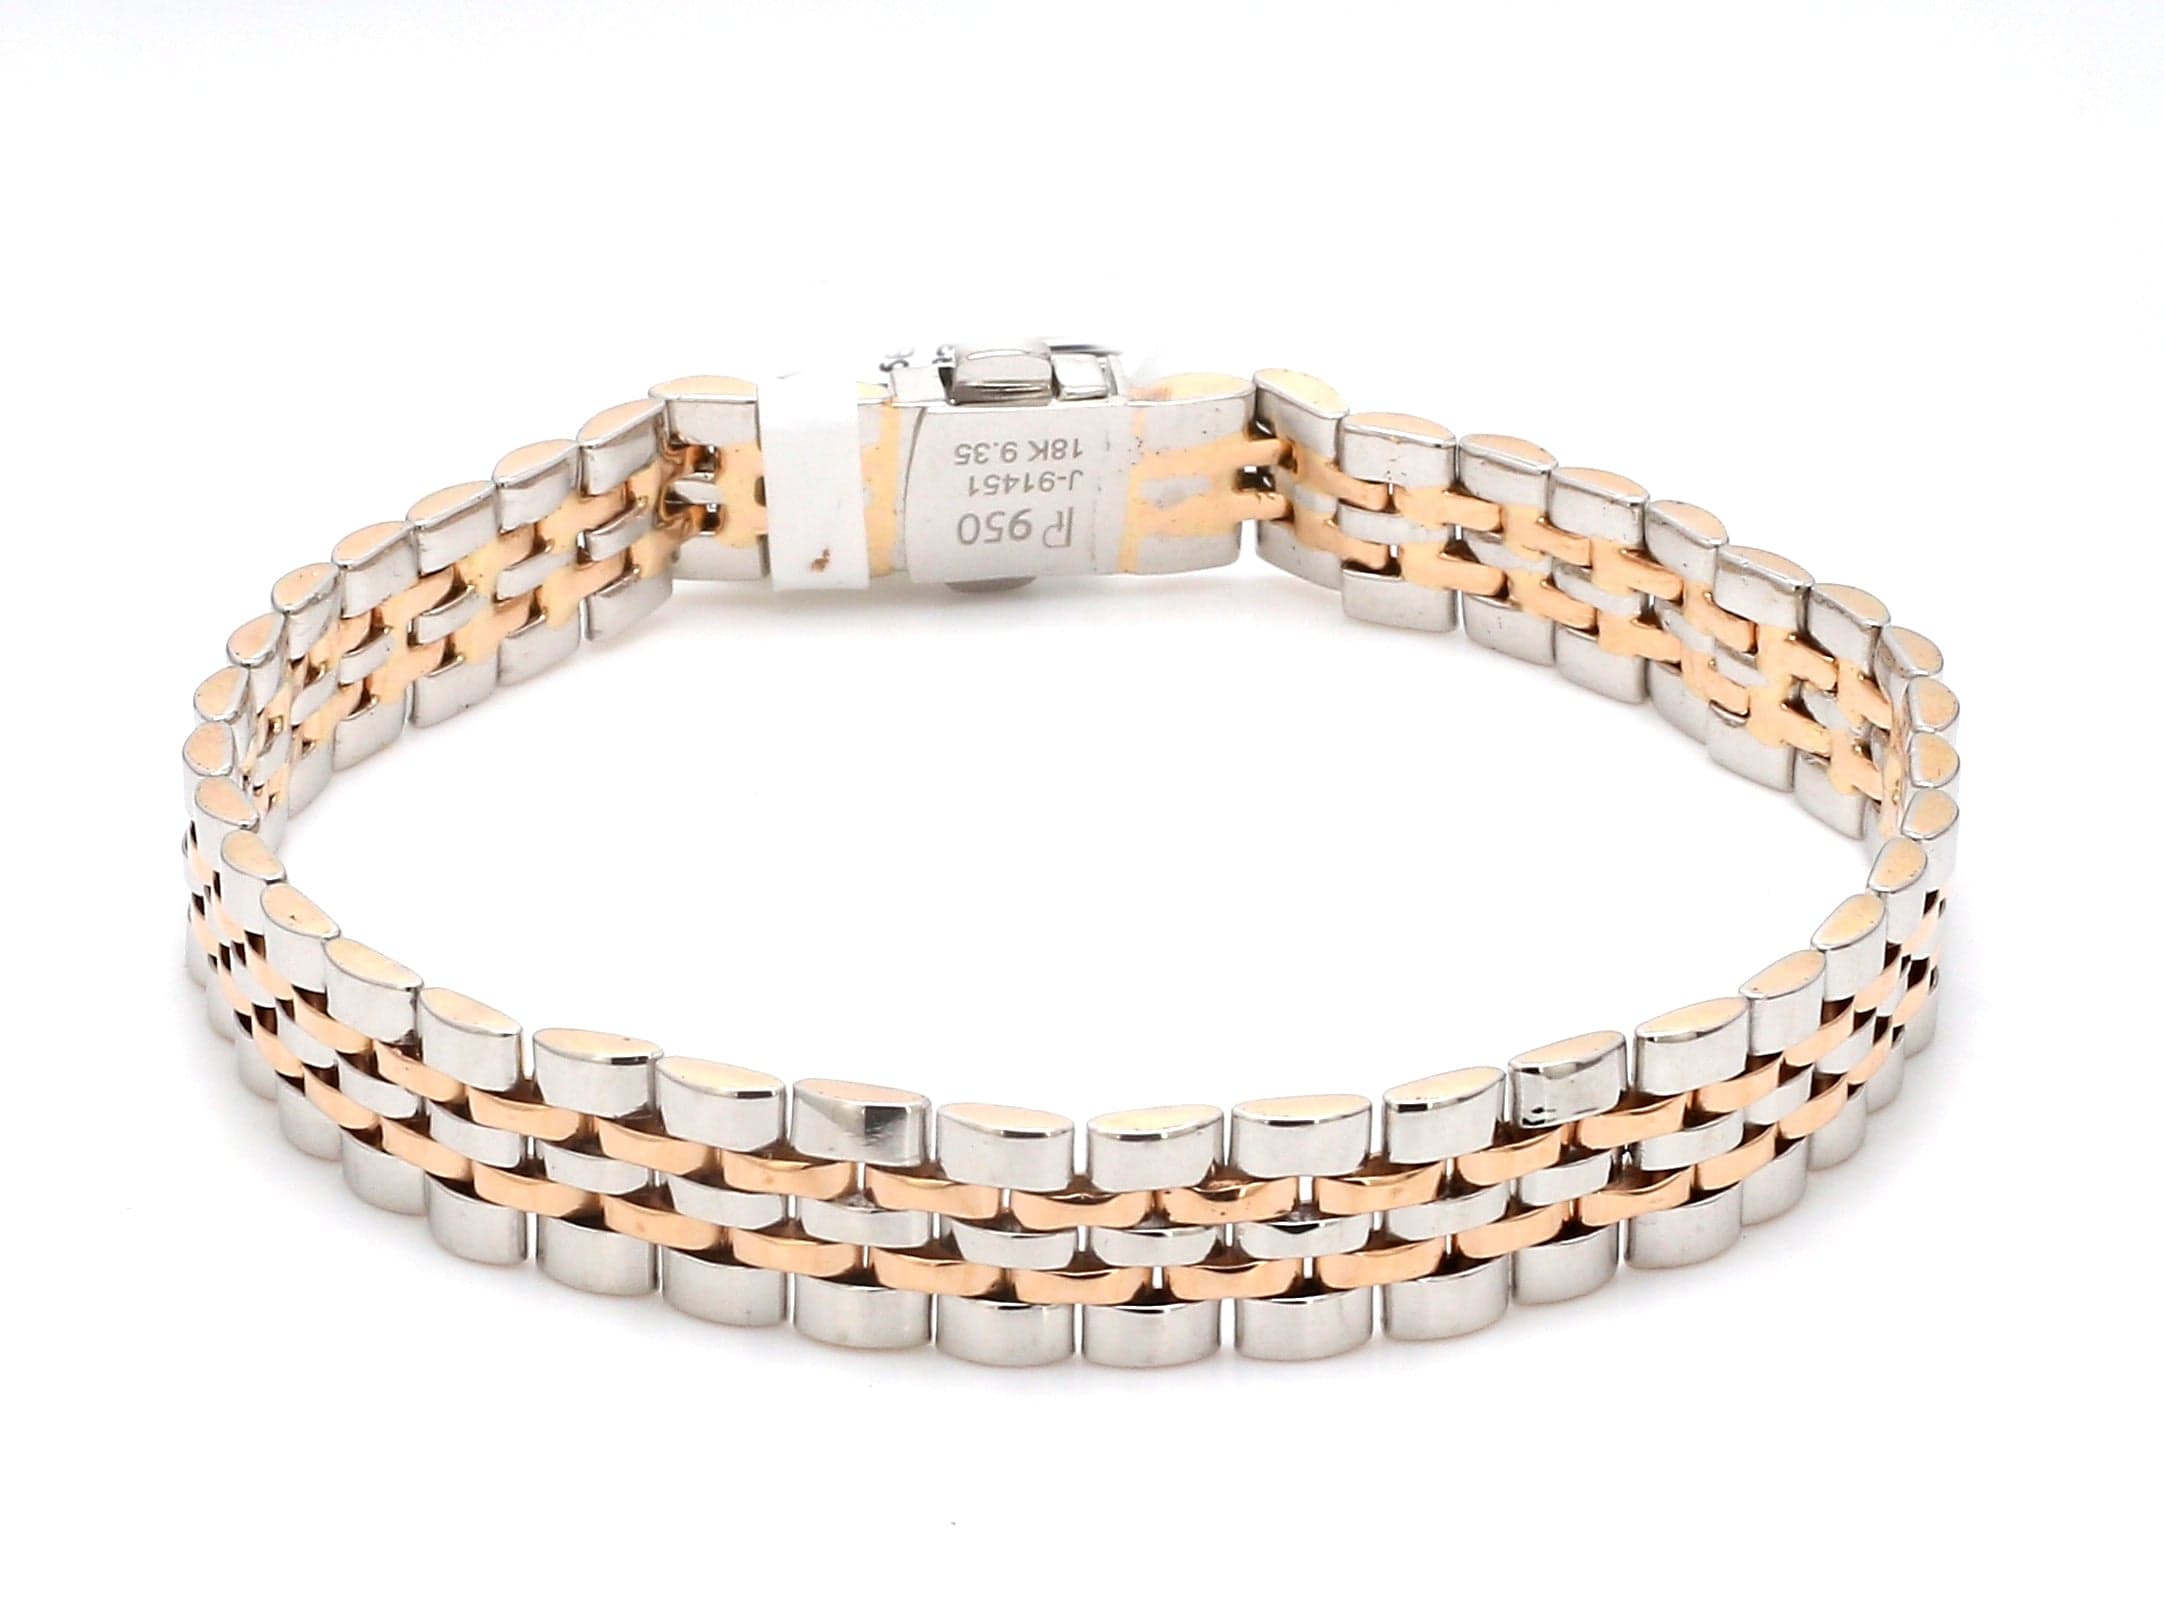 CRHP601186 - Panthère de Cartier bracelet - White gold, emeralds, onyx,  diamonds - Cartier